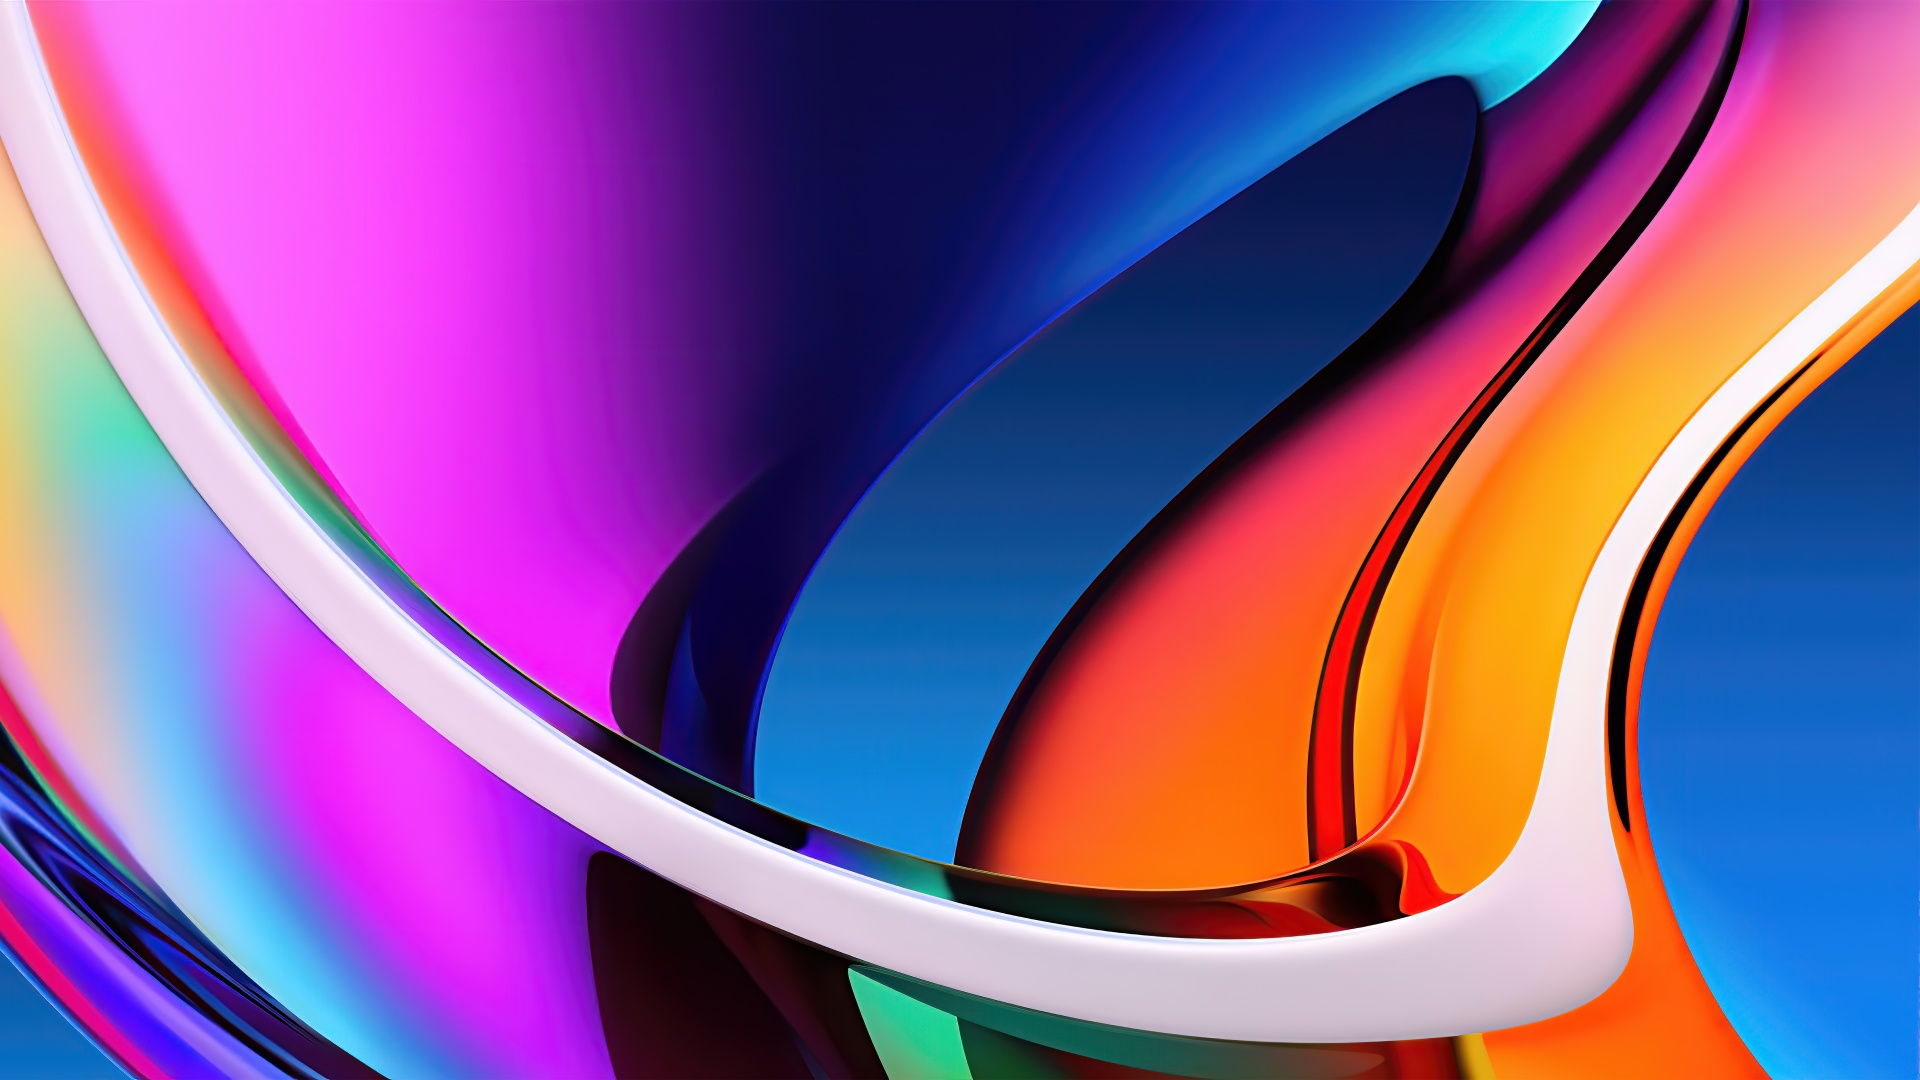 Apple iMac 4K Wallpaper, Colorful, Stock, Retina Display, Gradients, 5K